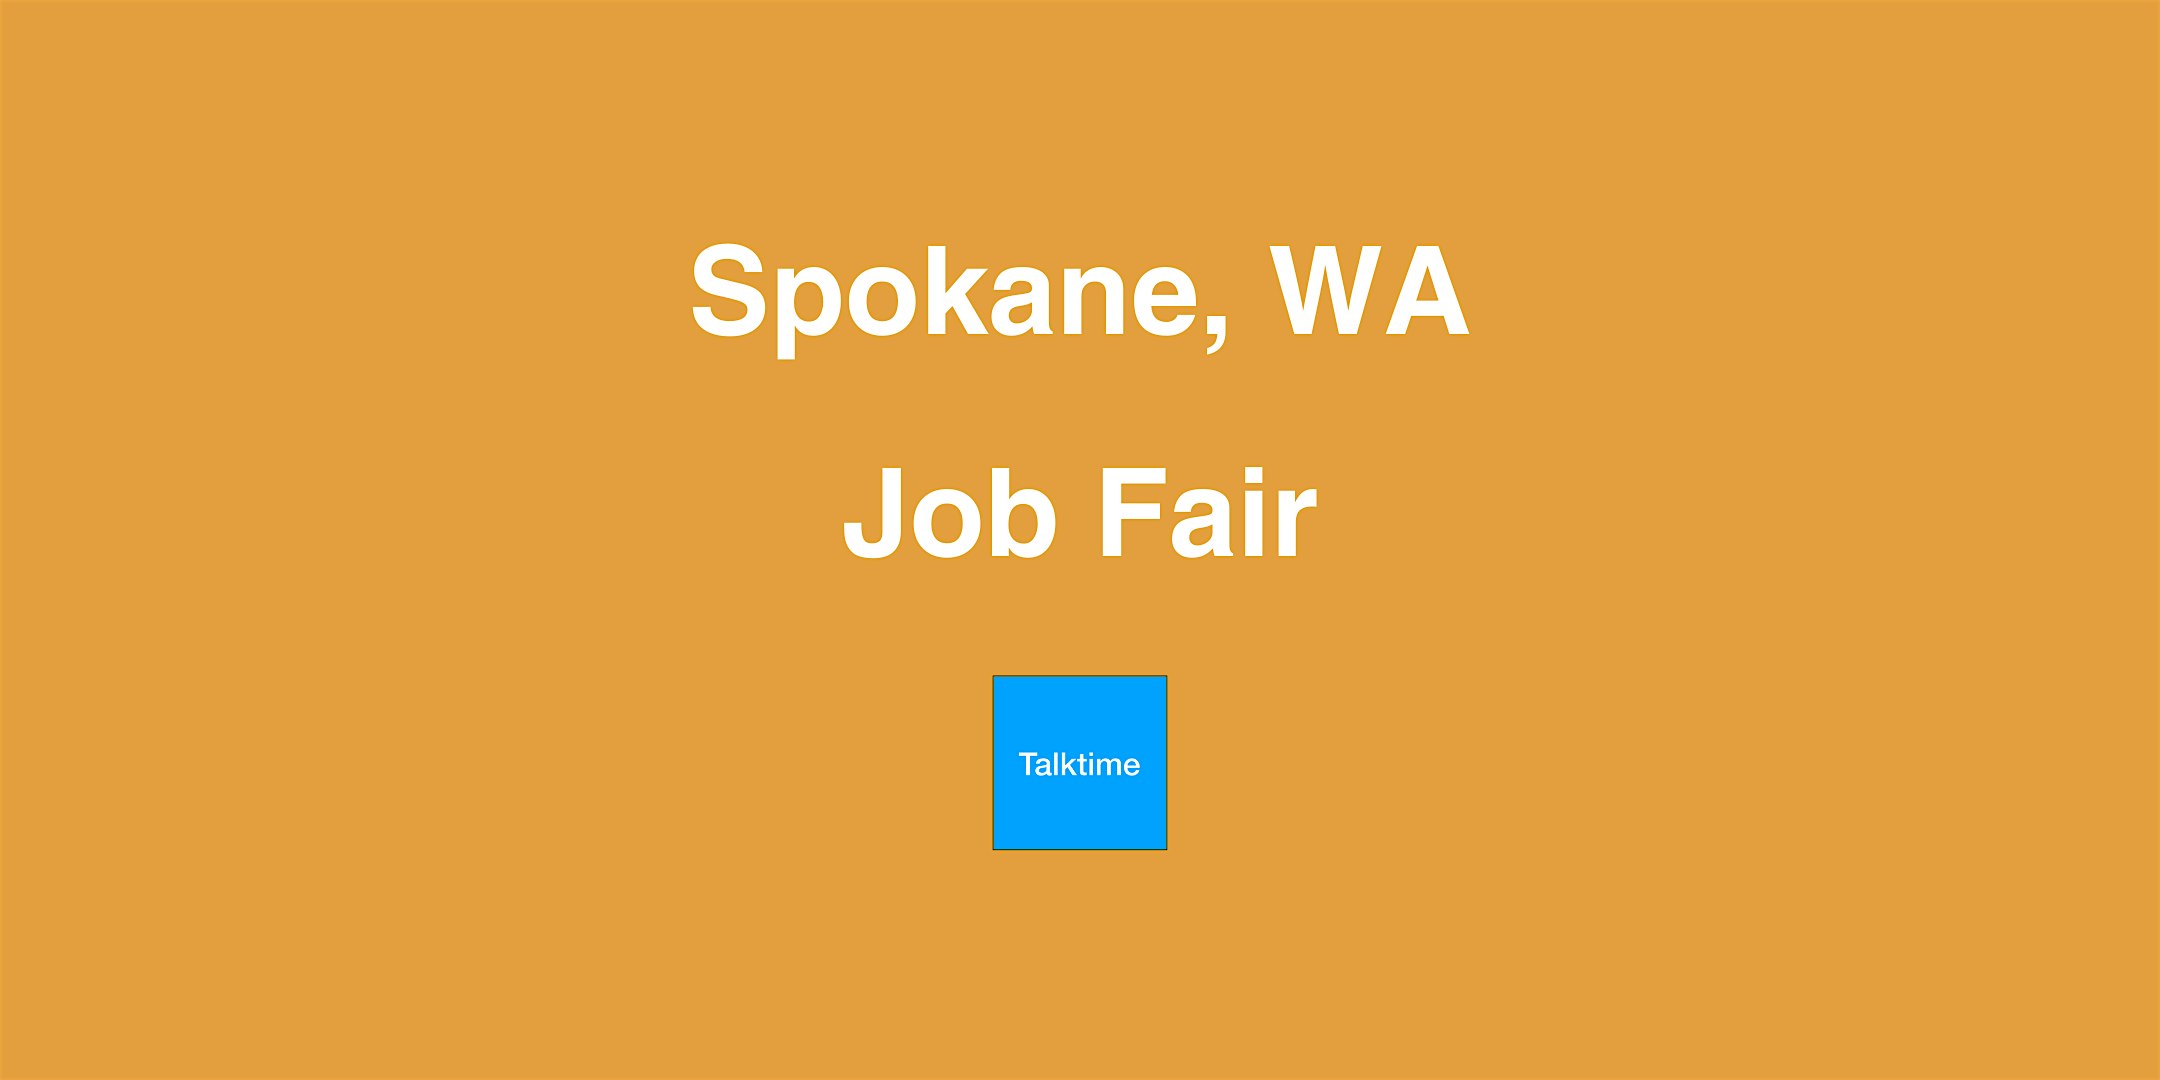 Job Fair - Spokane